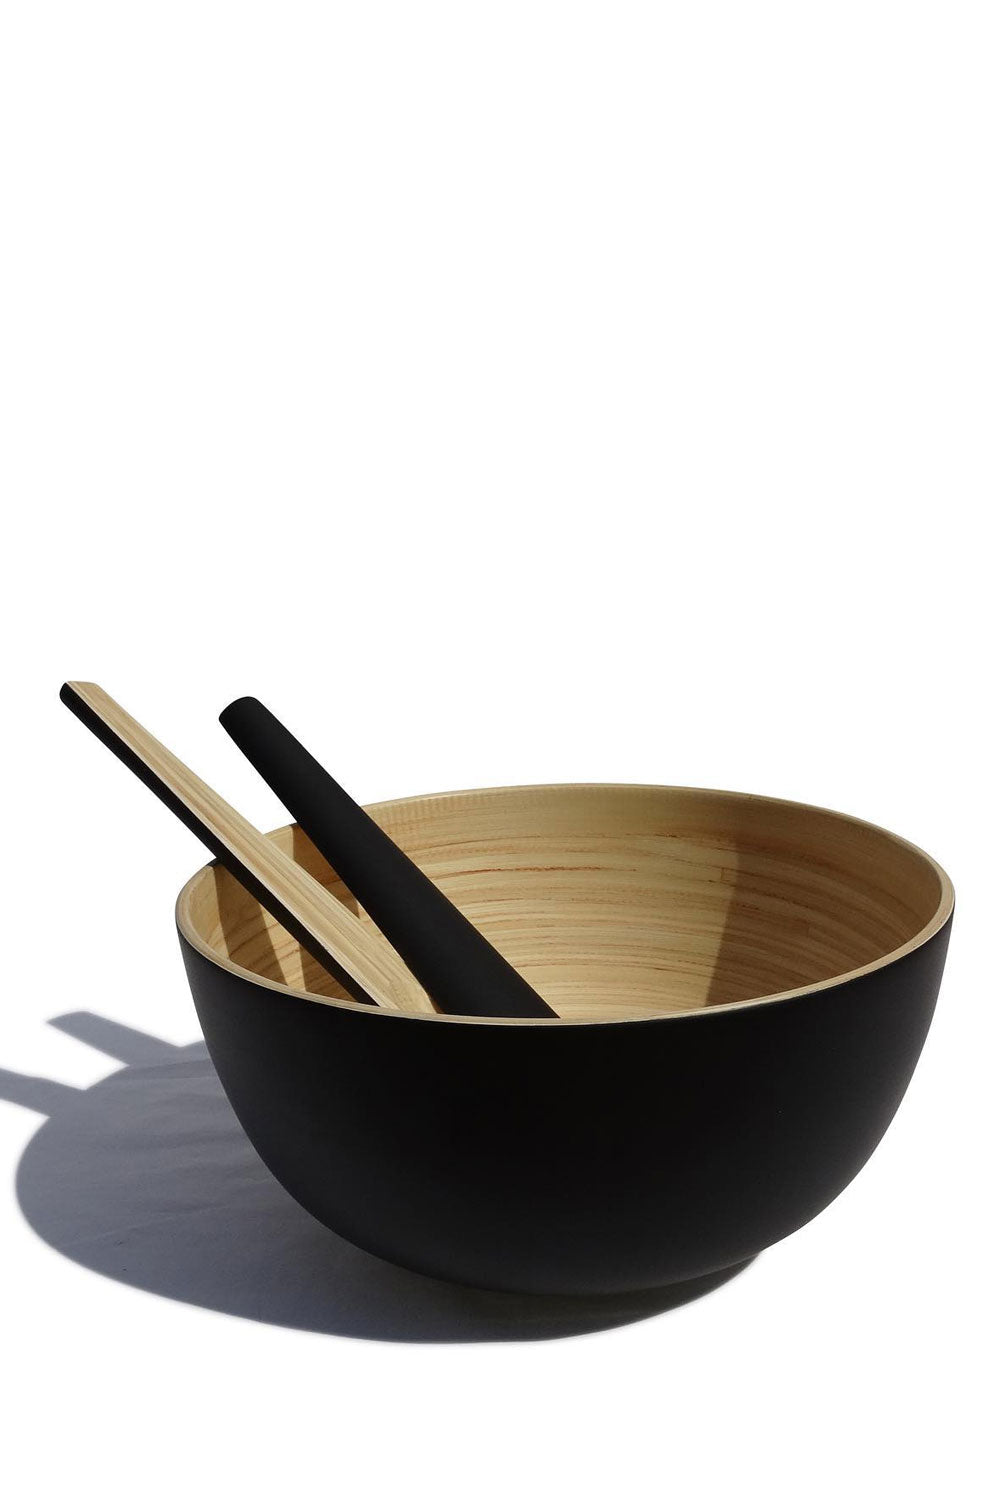 TCHON Bamboo Salad Bowl, 20 cm, Matte Black Maison7